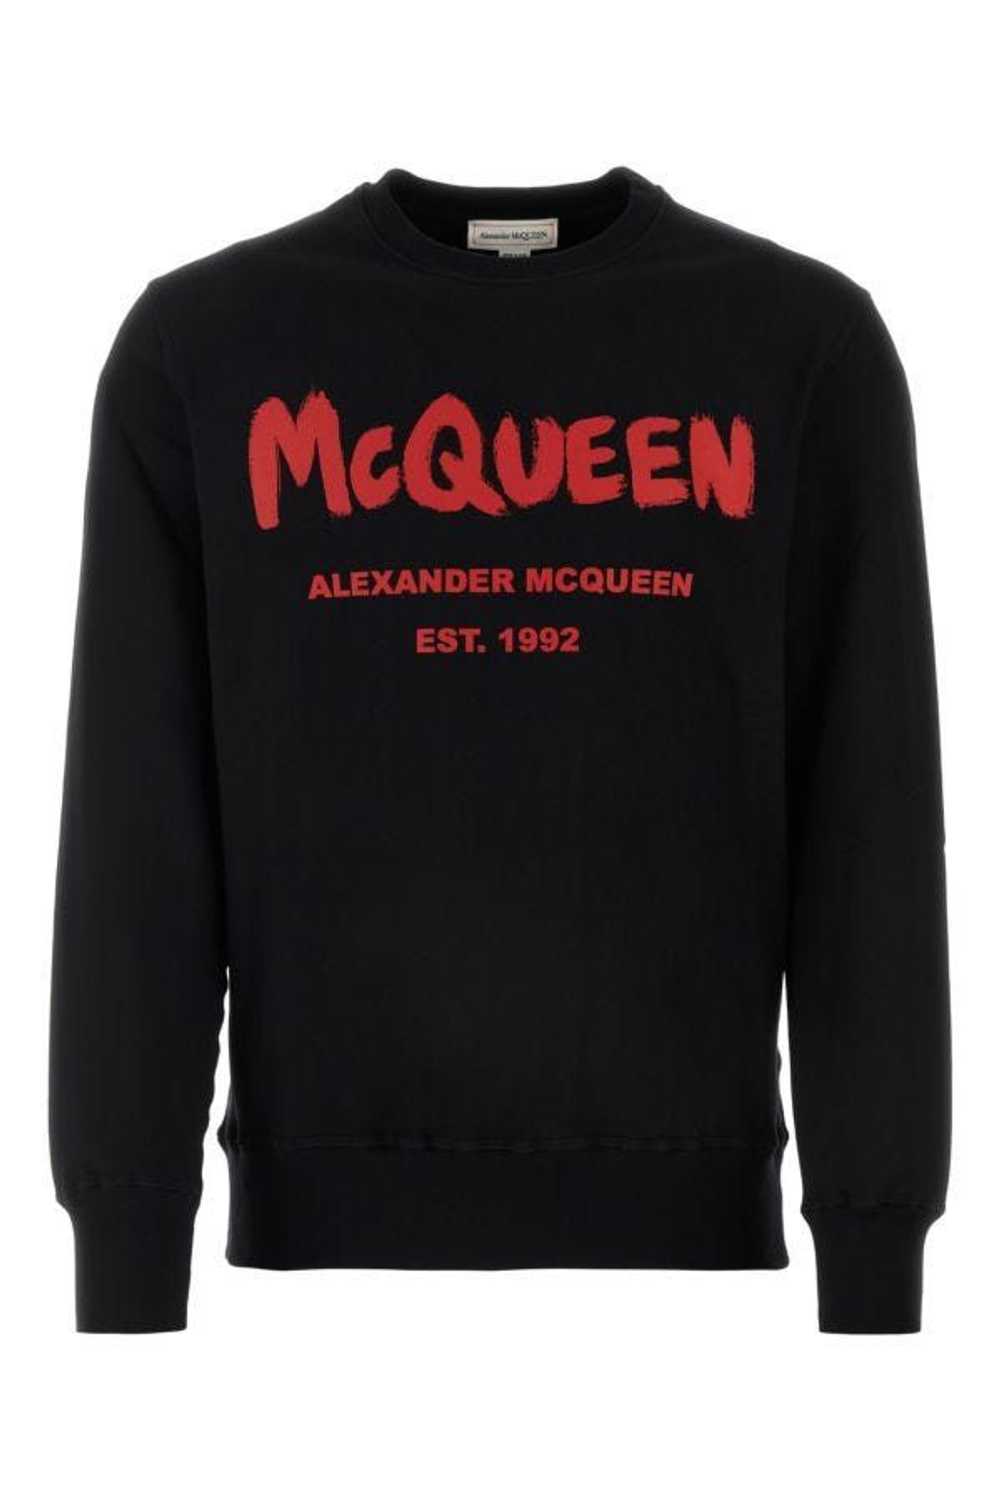 Alexander McQueen Black Cotton Sweatshirt - image 3